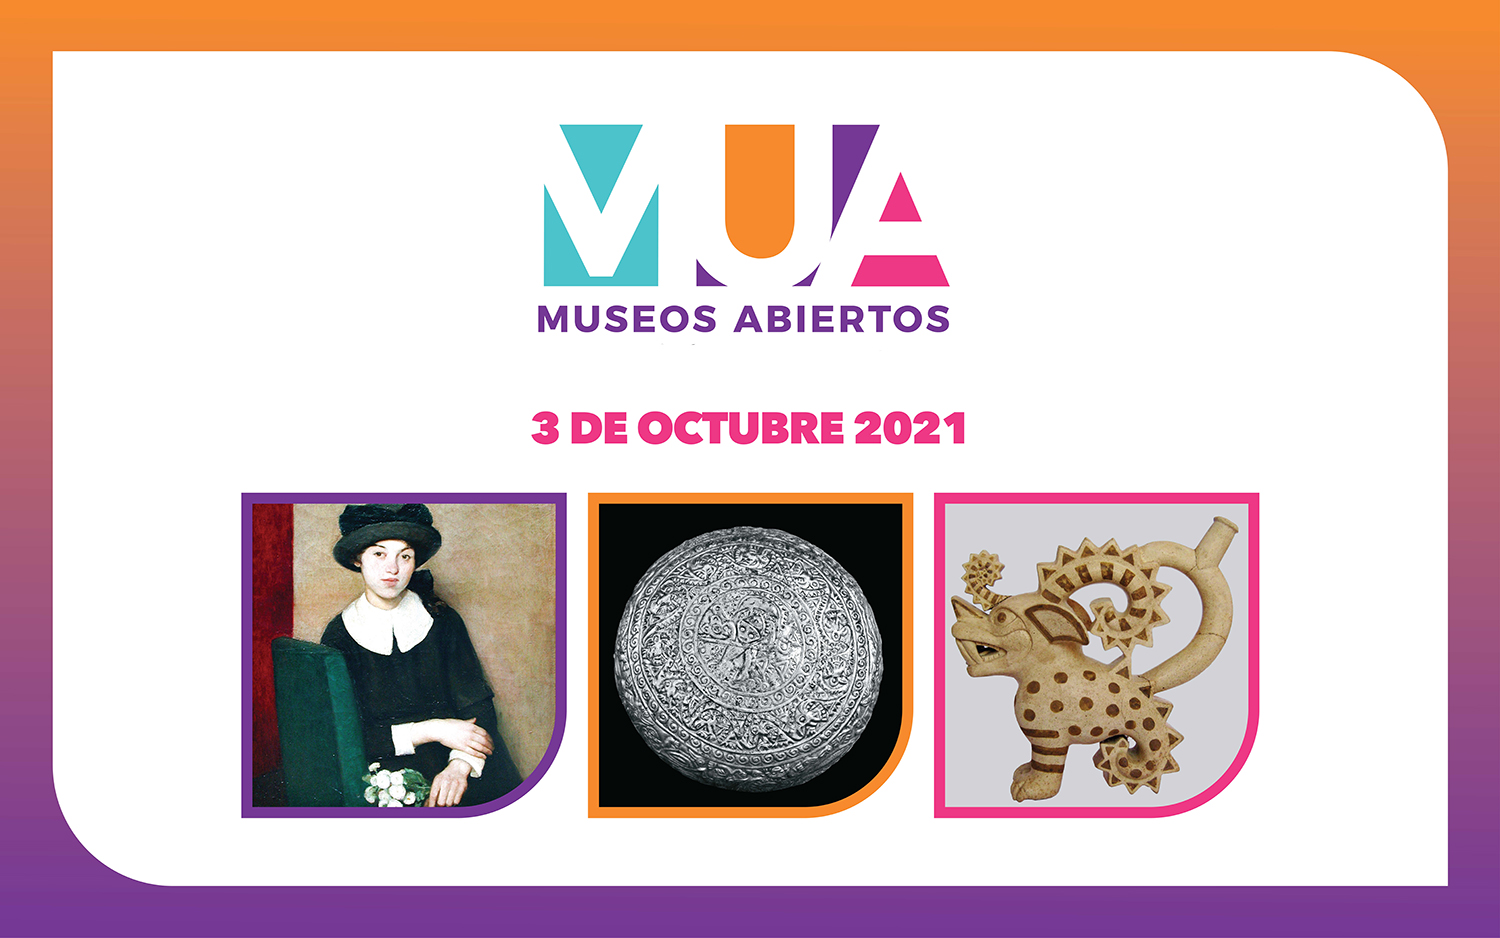 Actividades de "Museos Abiertos" - MUA en octubre 2021